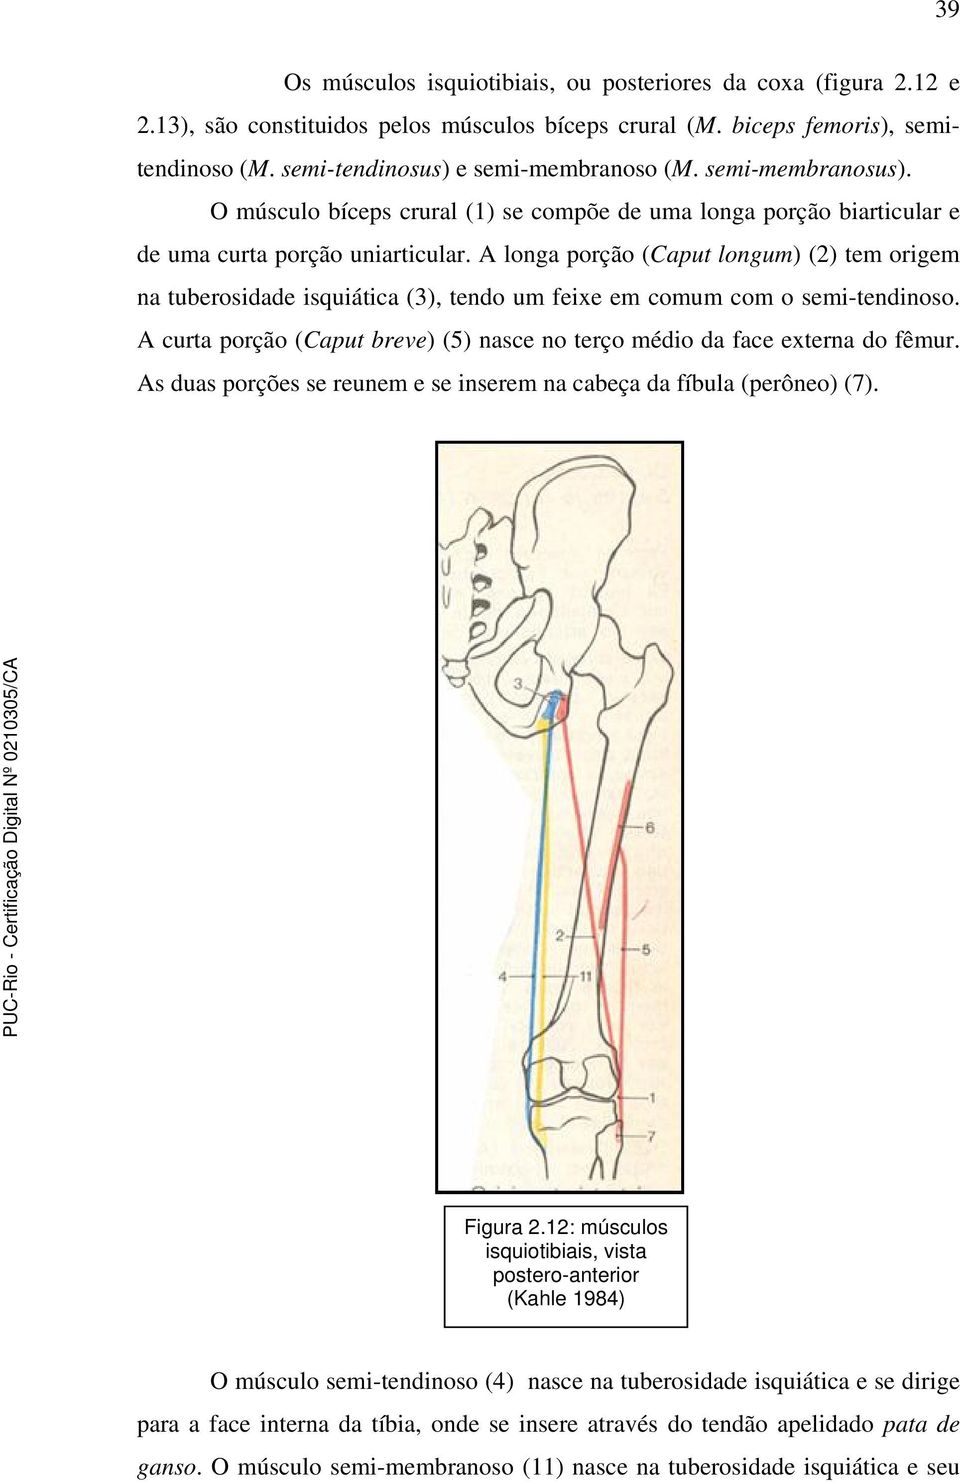 A longa porção (Caput longum) (2) tem origem na tuberosidade isquiática (3), tendo um feixe em comum com o semi-tendinoso.